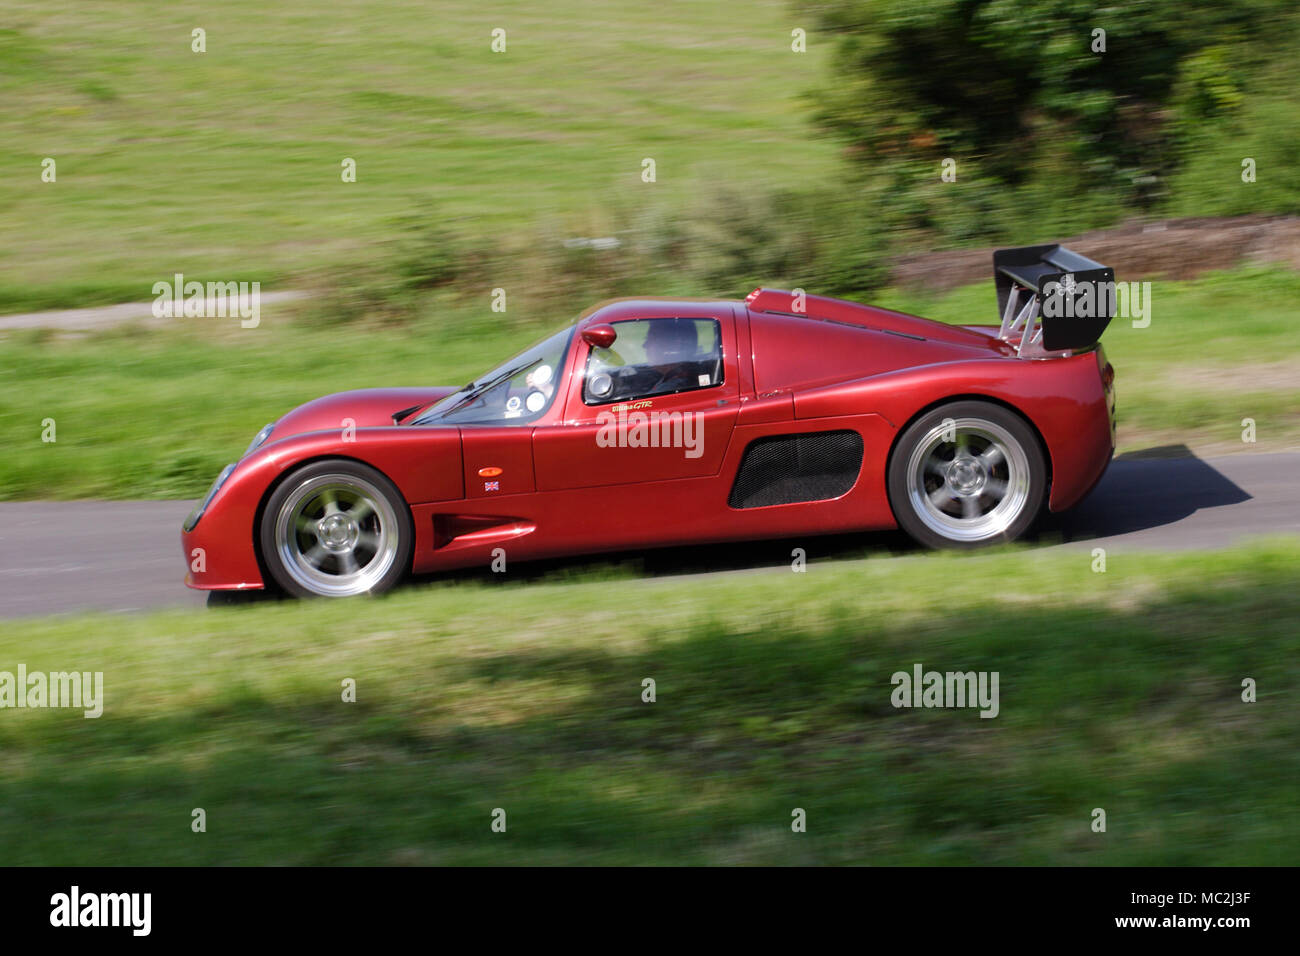 Red scarlet Ultima GTR im Profil (Seitenansicht) schnelles Fahren auf einer Landstraße. Stockfoto